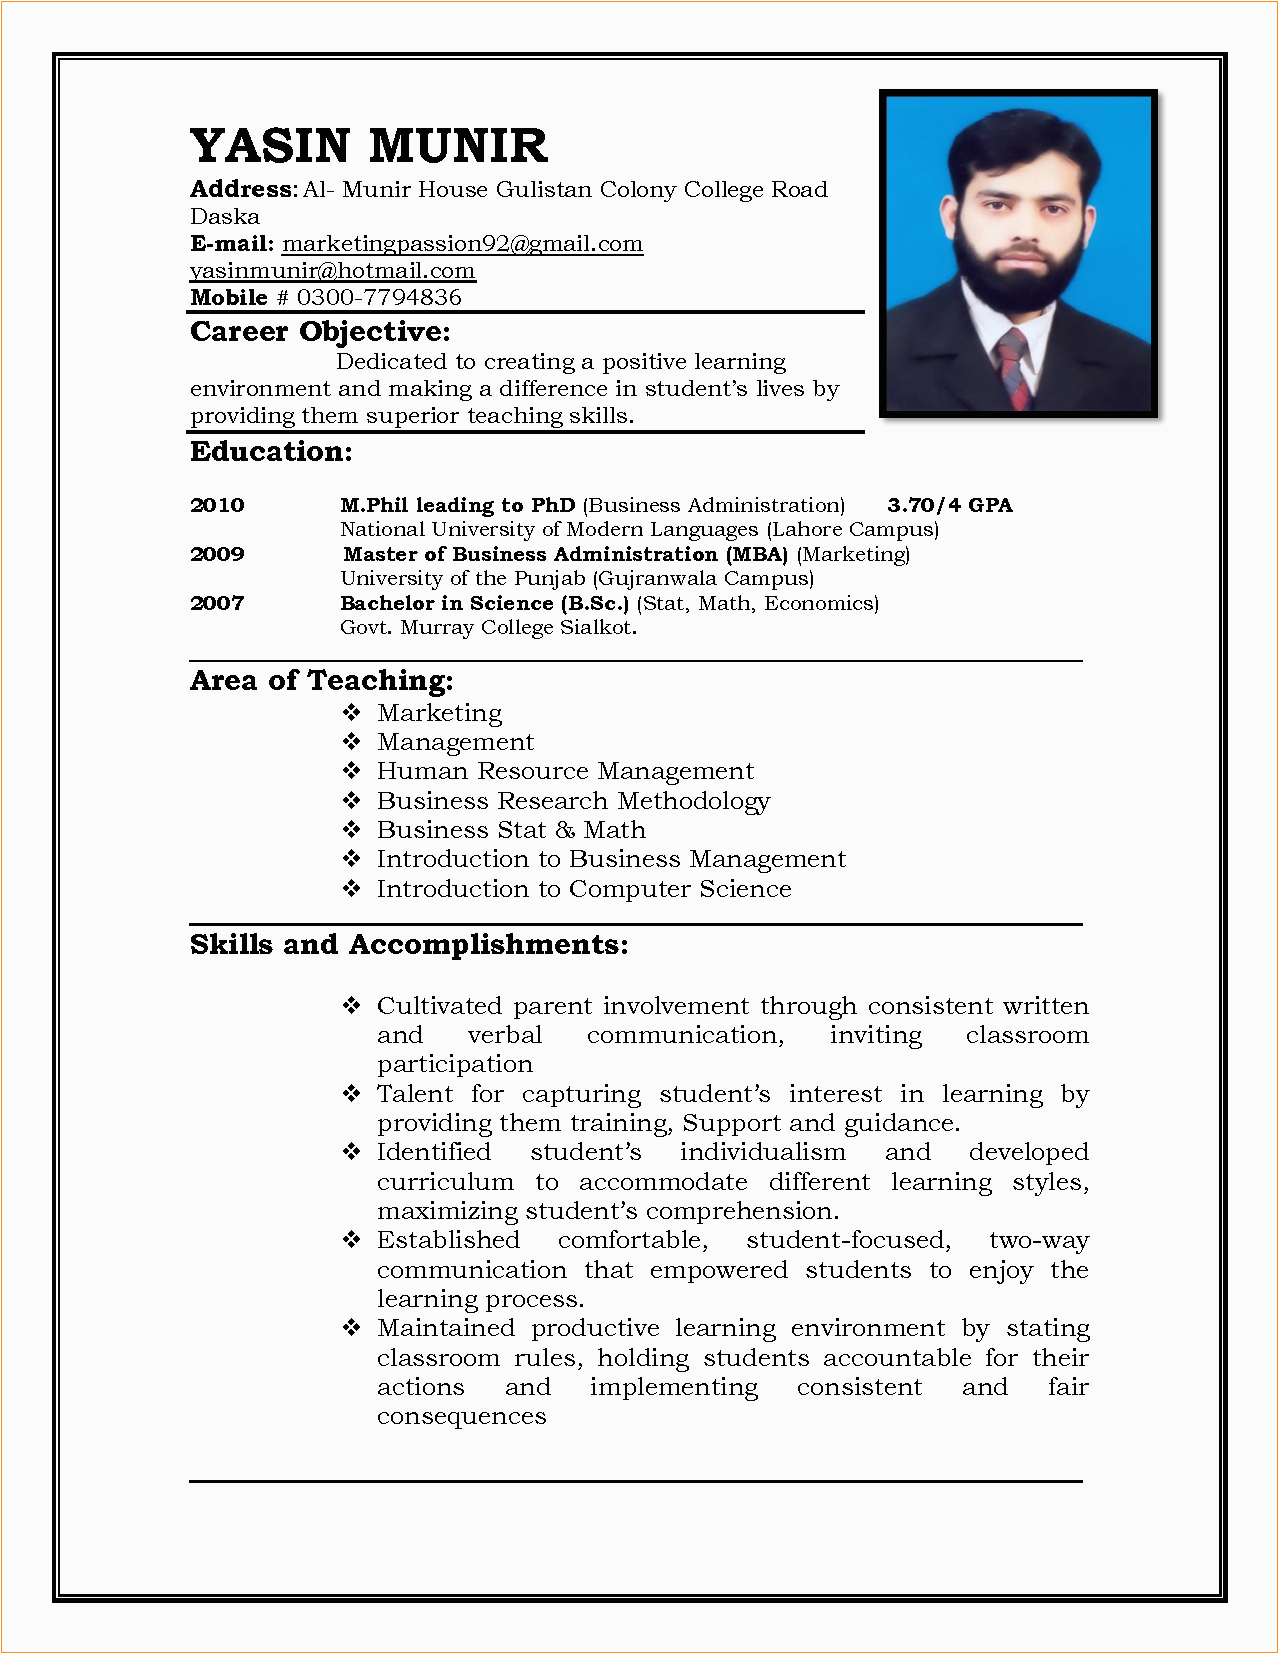 Sample Of Resume for Applying Teaching Job Resume format for Jobs Cv format for Job Application